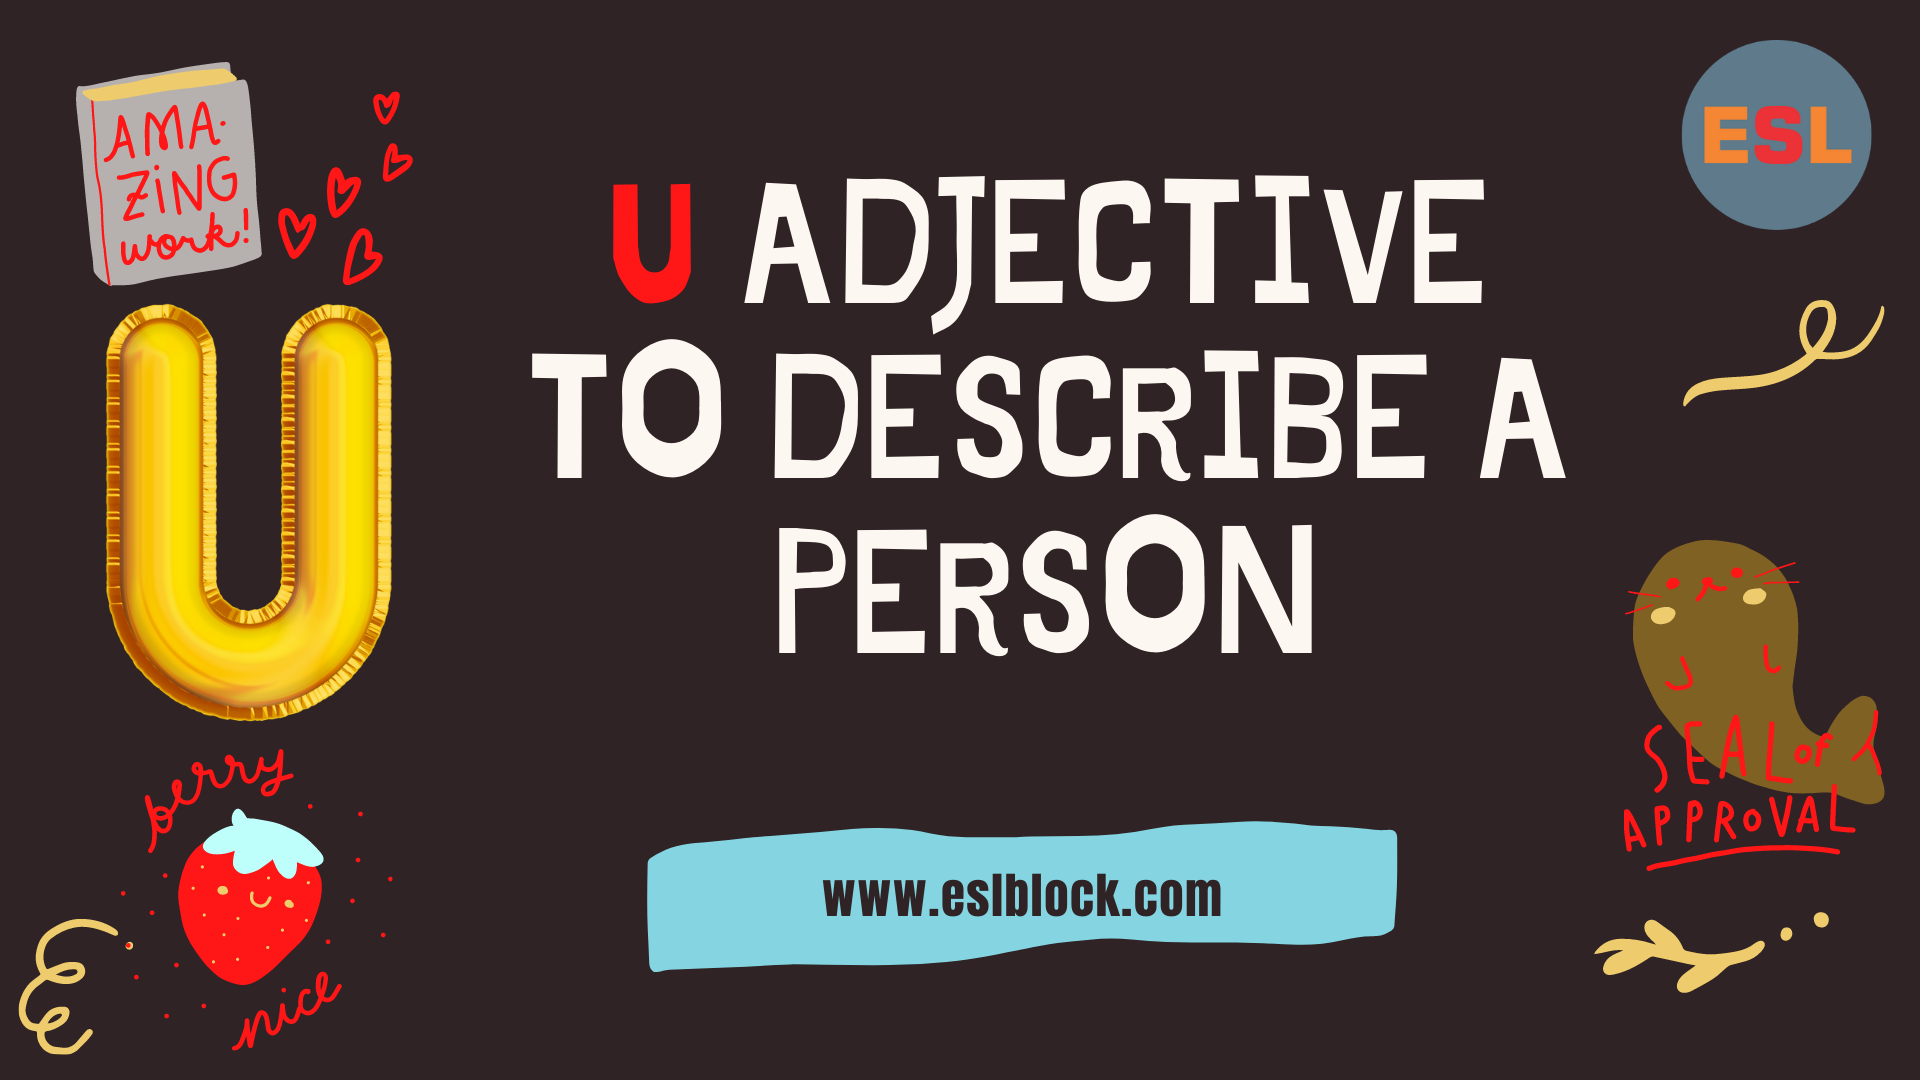 A-Z Adjectives, Adjective Words, Adjectives, Adjectives to describe a person, Positive Adjectives to Describe a Person, U Adjectives to Describe a Person, U Positive Adjectives to Describe a Person, U Words, Vocabulary, Words That Describe a Person